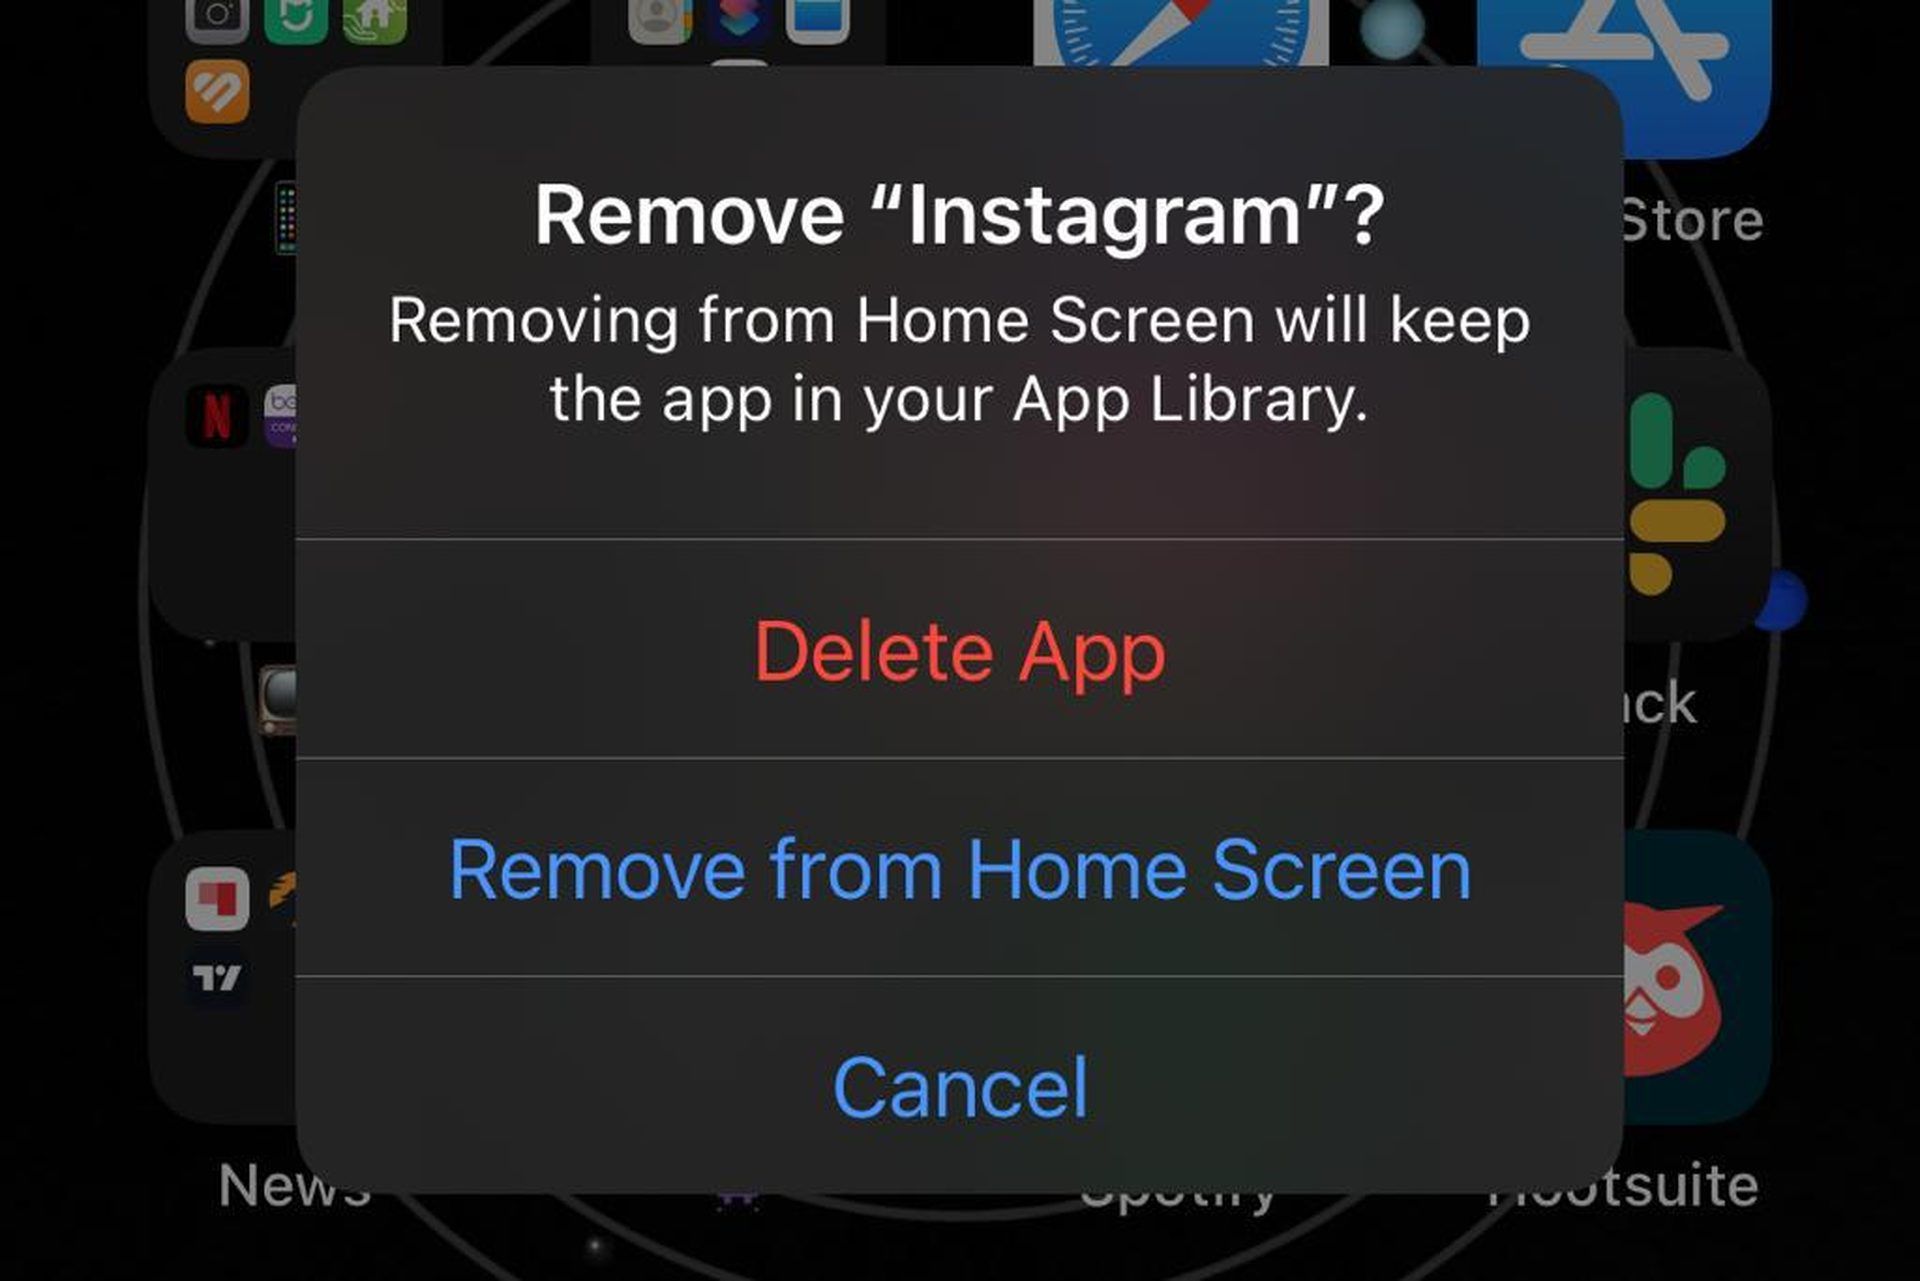 Hoe repareer ik de Instagram Add Yours-sticker die niet werkt?